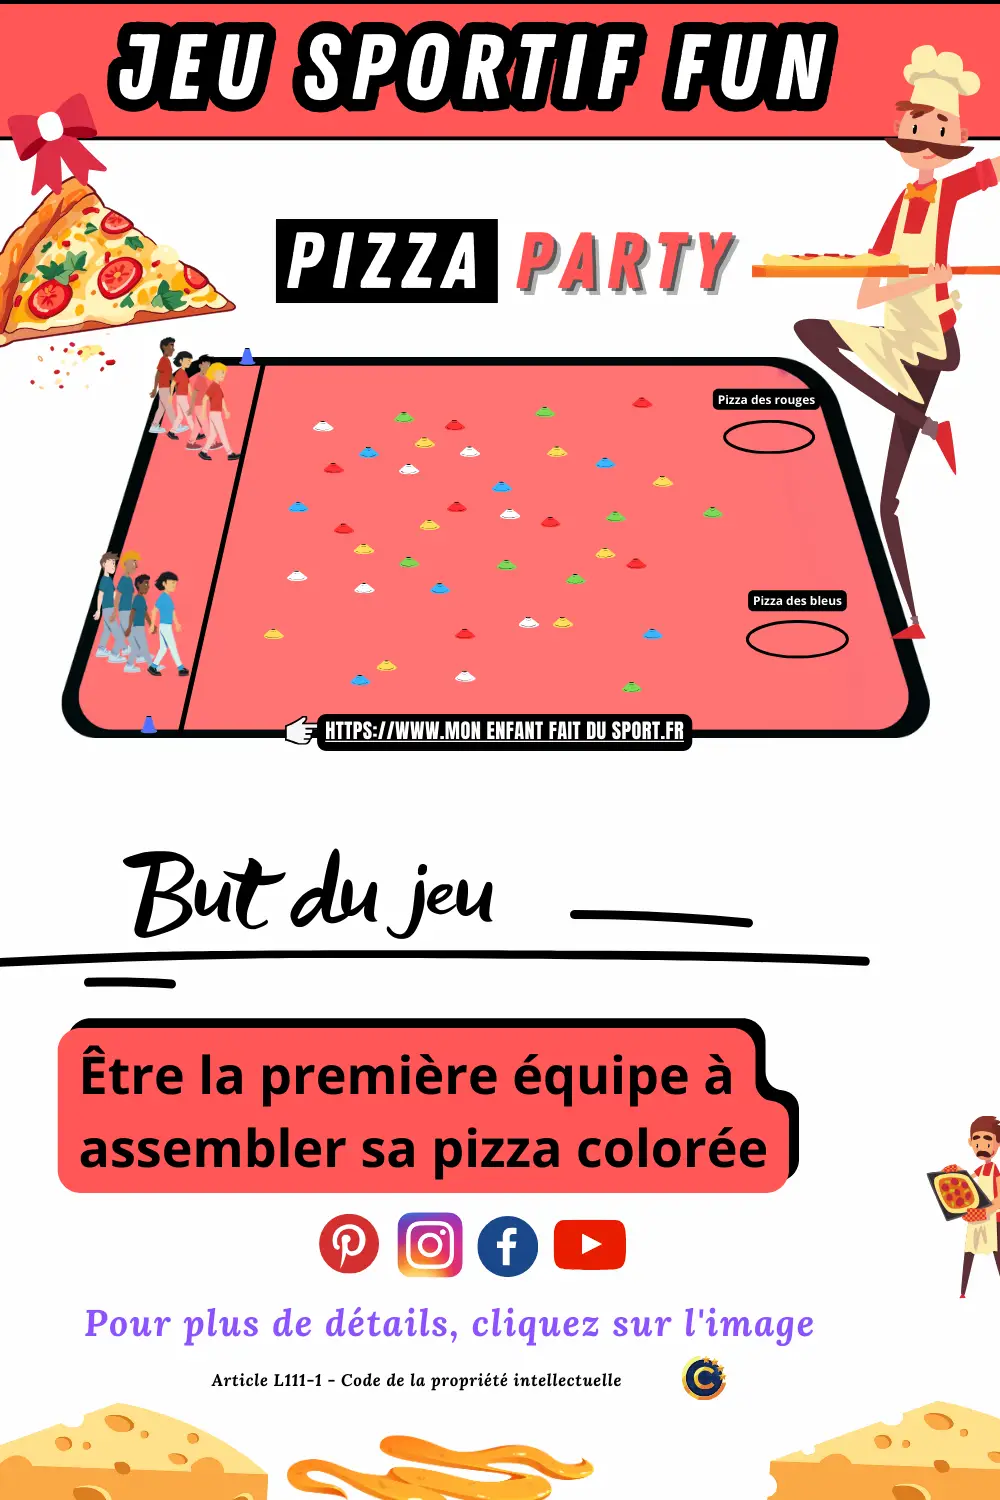 Le jeu sportif "Pizza Party" est un jeu sportif fun. Le but du jeu est d'être la première équipe à assembler sa pizza colorée